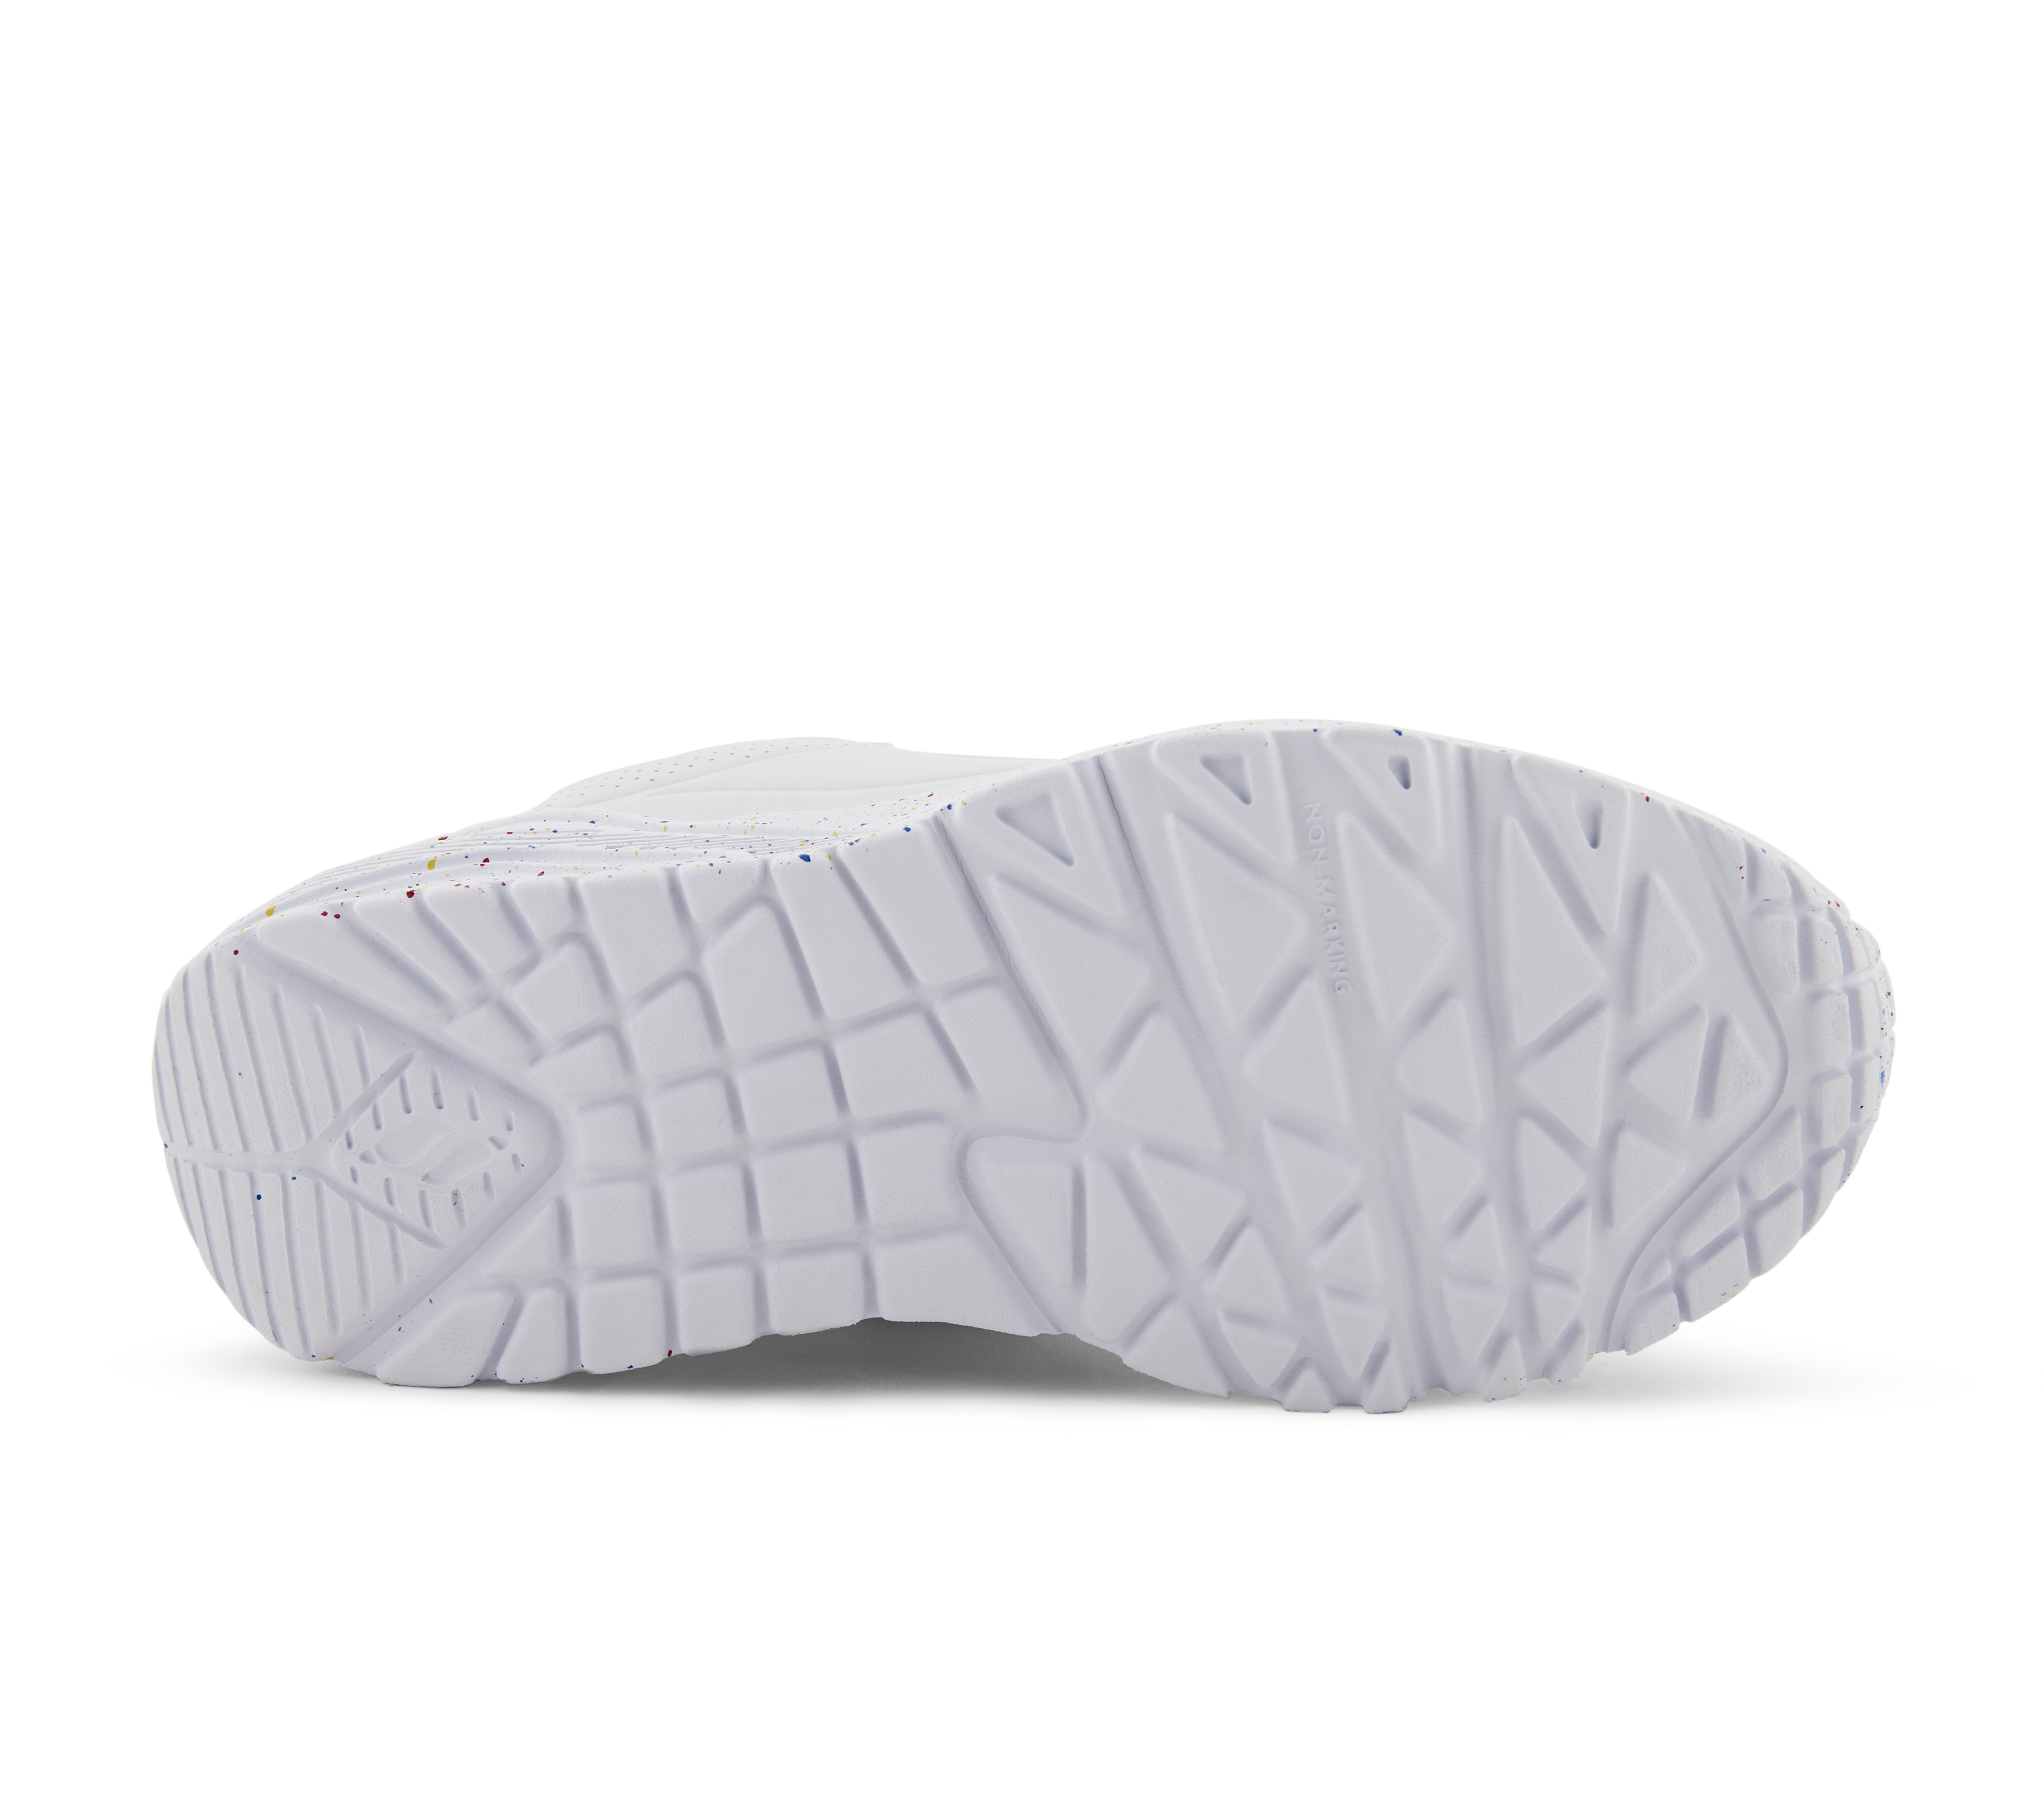 UNO LITE-RAINBOW SPECKLE, WHITE/MULTI Footwear Bottom View